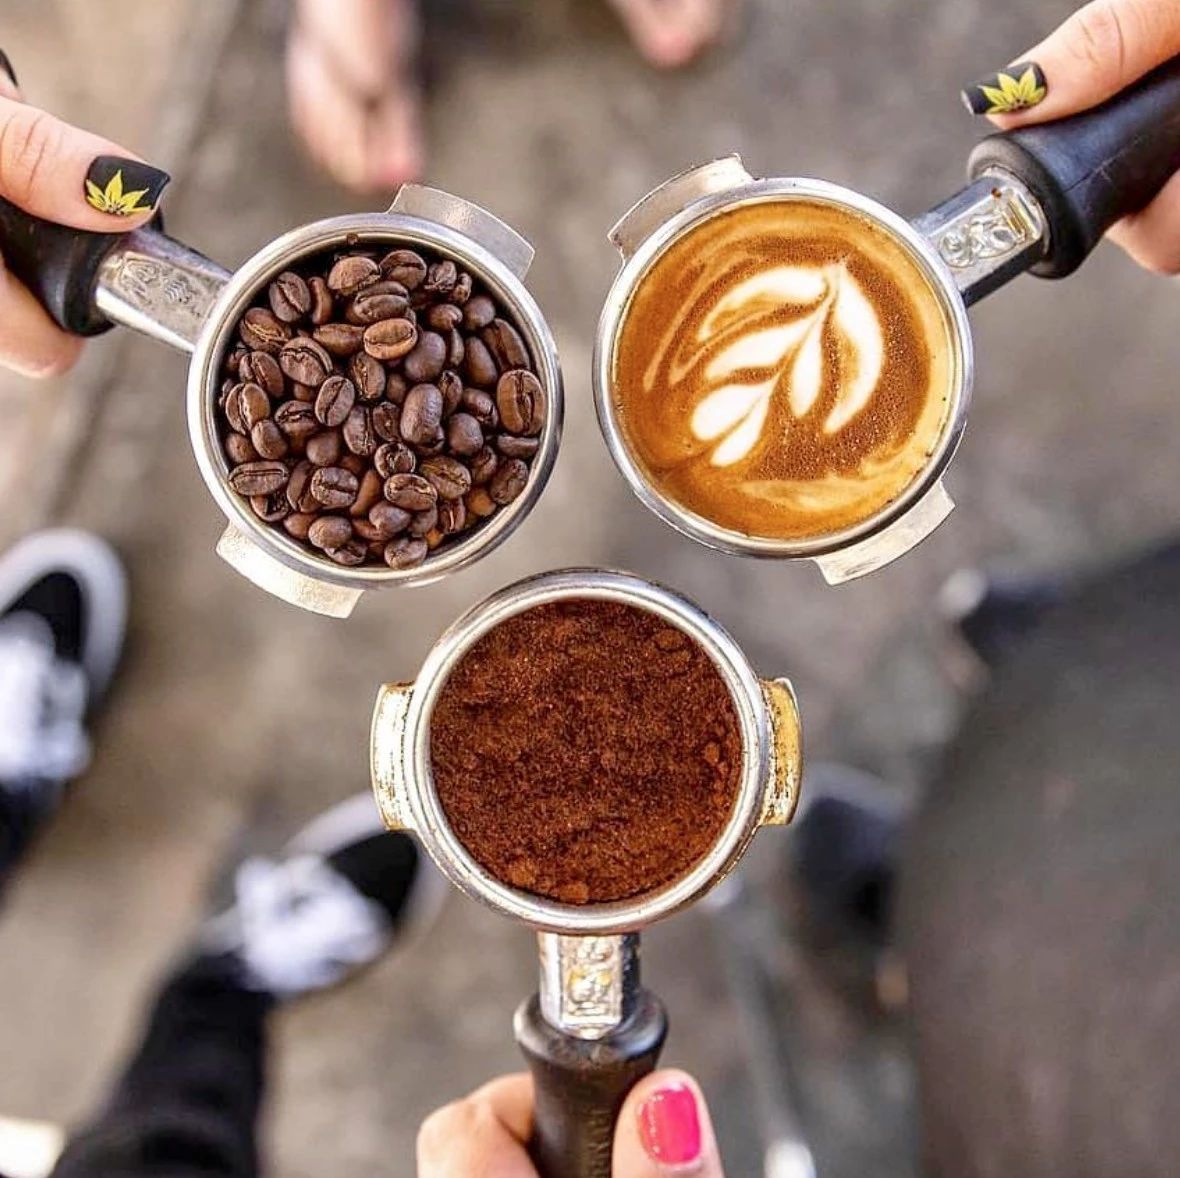 咖啡品鉴｜ 咖啡品种在不同国家和地区表现不同风味